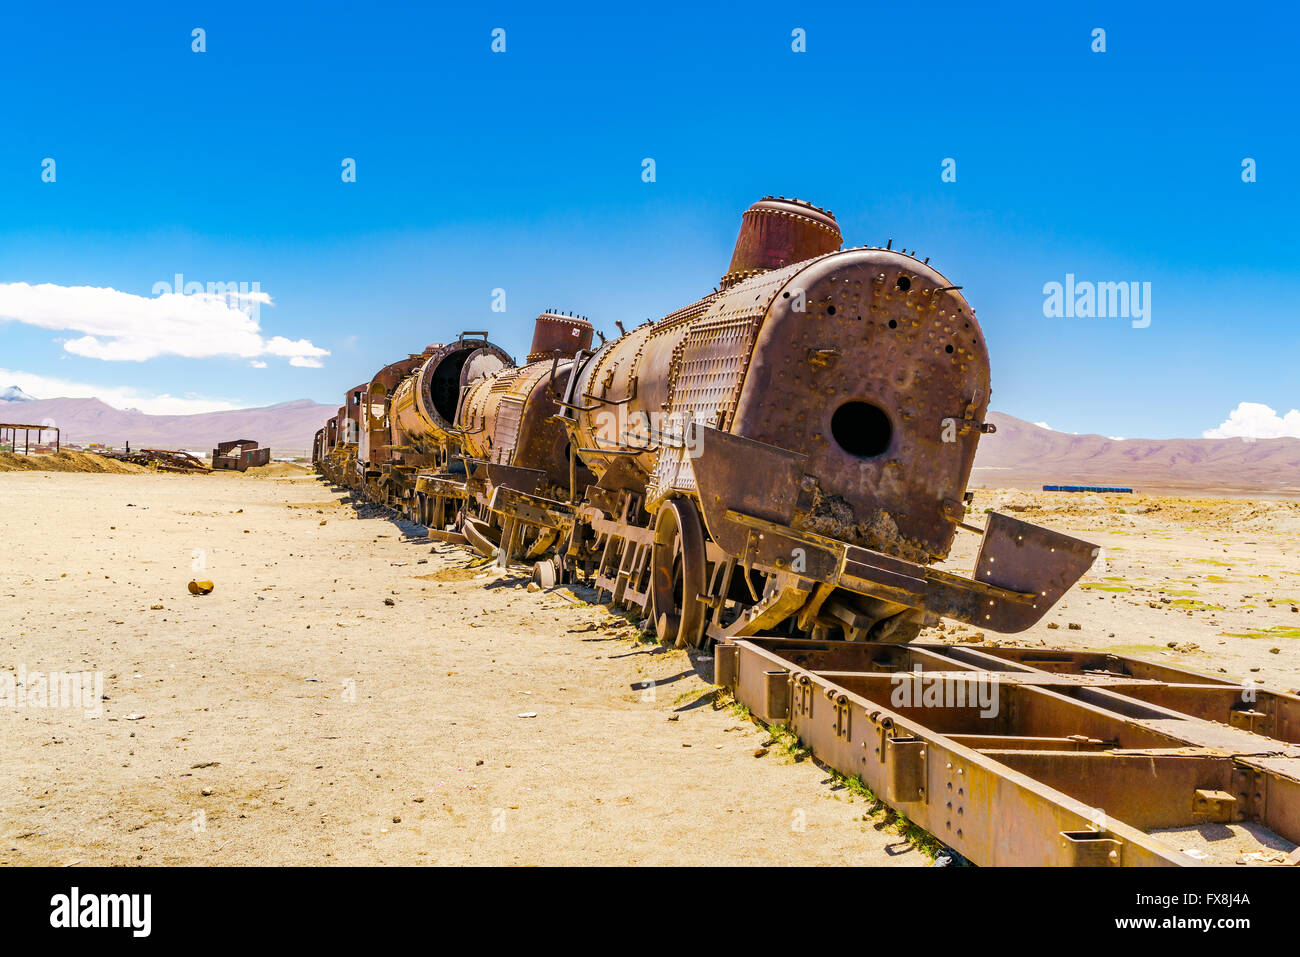 El viejo tren oxidado abandonados en el desierto de Uyuni en Bolivia Foto de stock